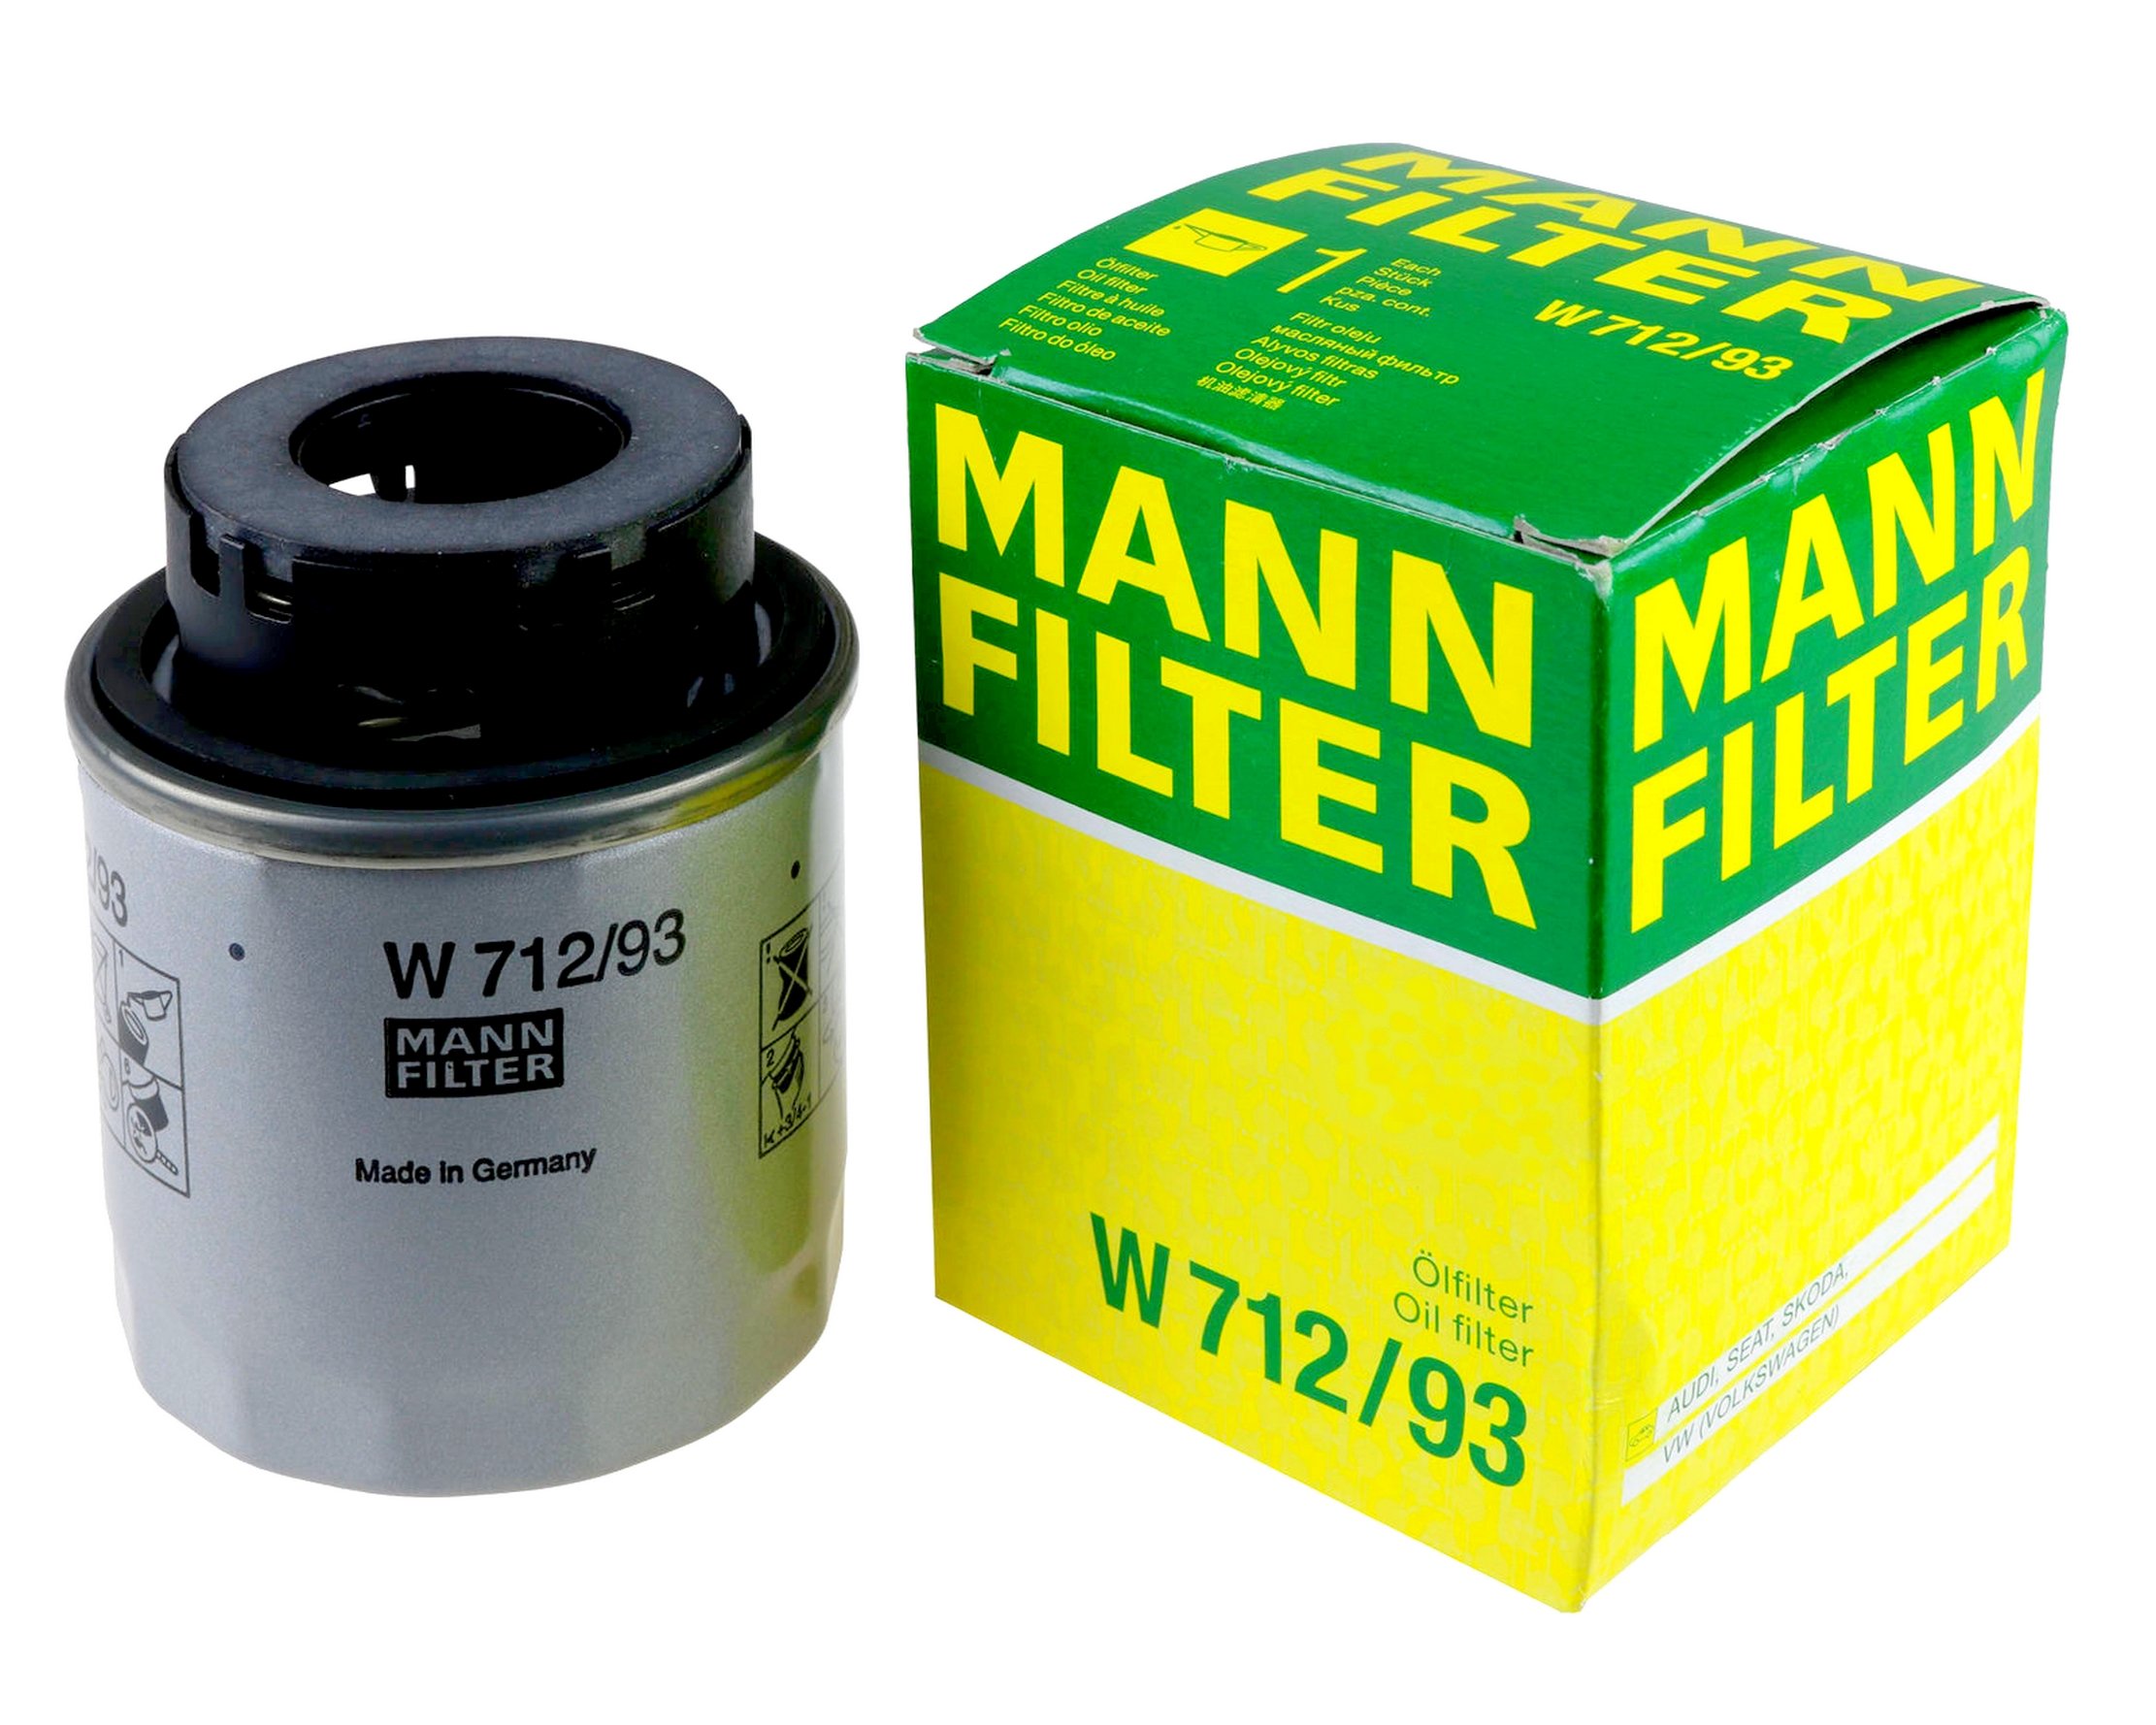 Масло фильтр отзывы. Фильтр масляный Mann w712/8. W 712/93. Фильтр масляный Фольксваген поло Манн. Mann-Filter w 712/83 фильтр масляный двигателя.